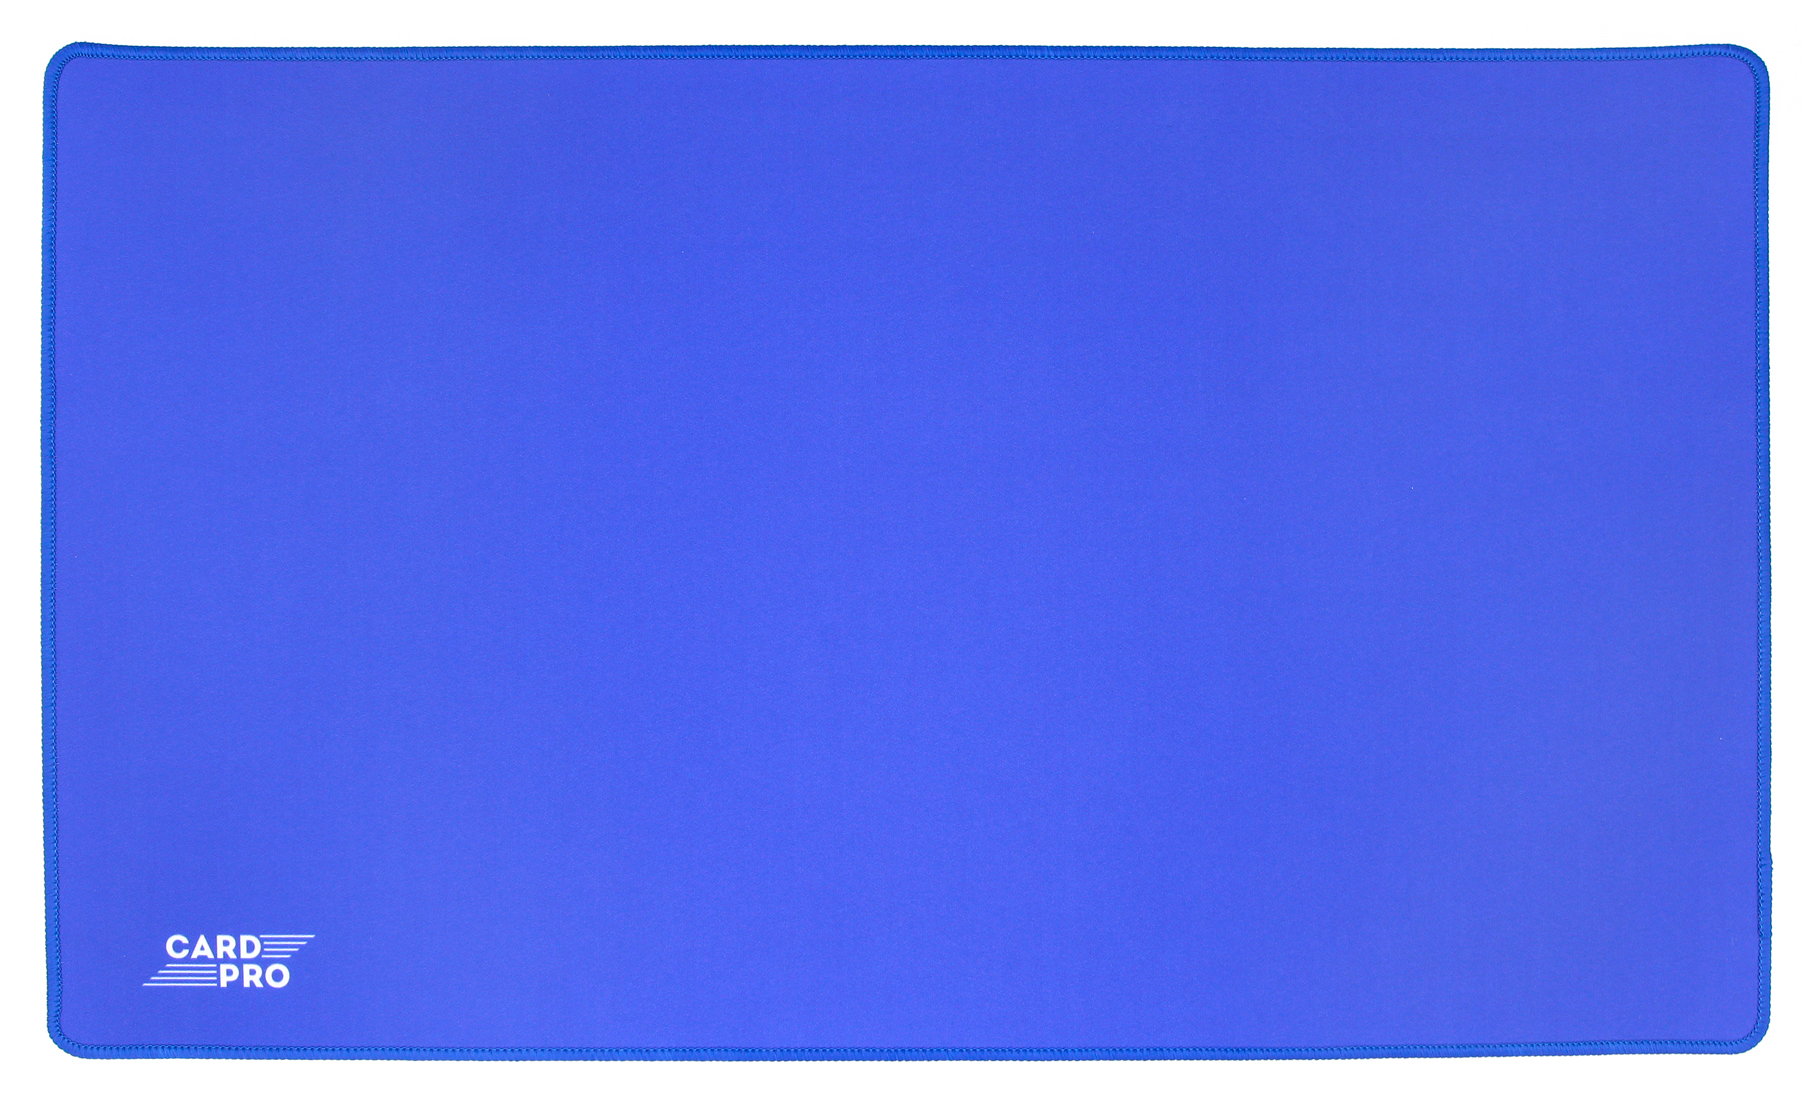 Игровой коврик Card-Pro Синий 274731 игровой коврик card pro оранжевый 274726